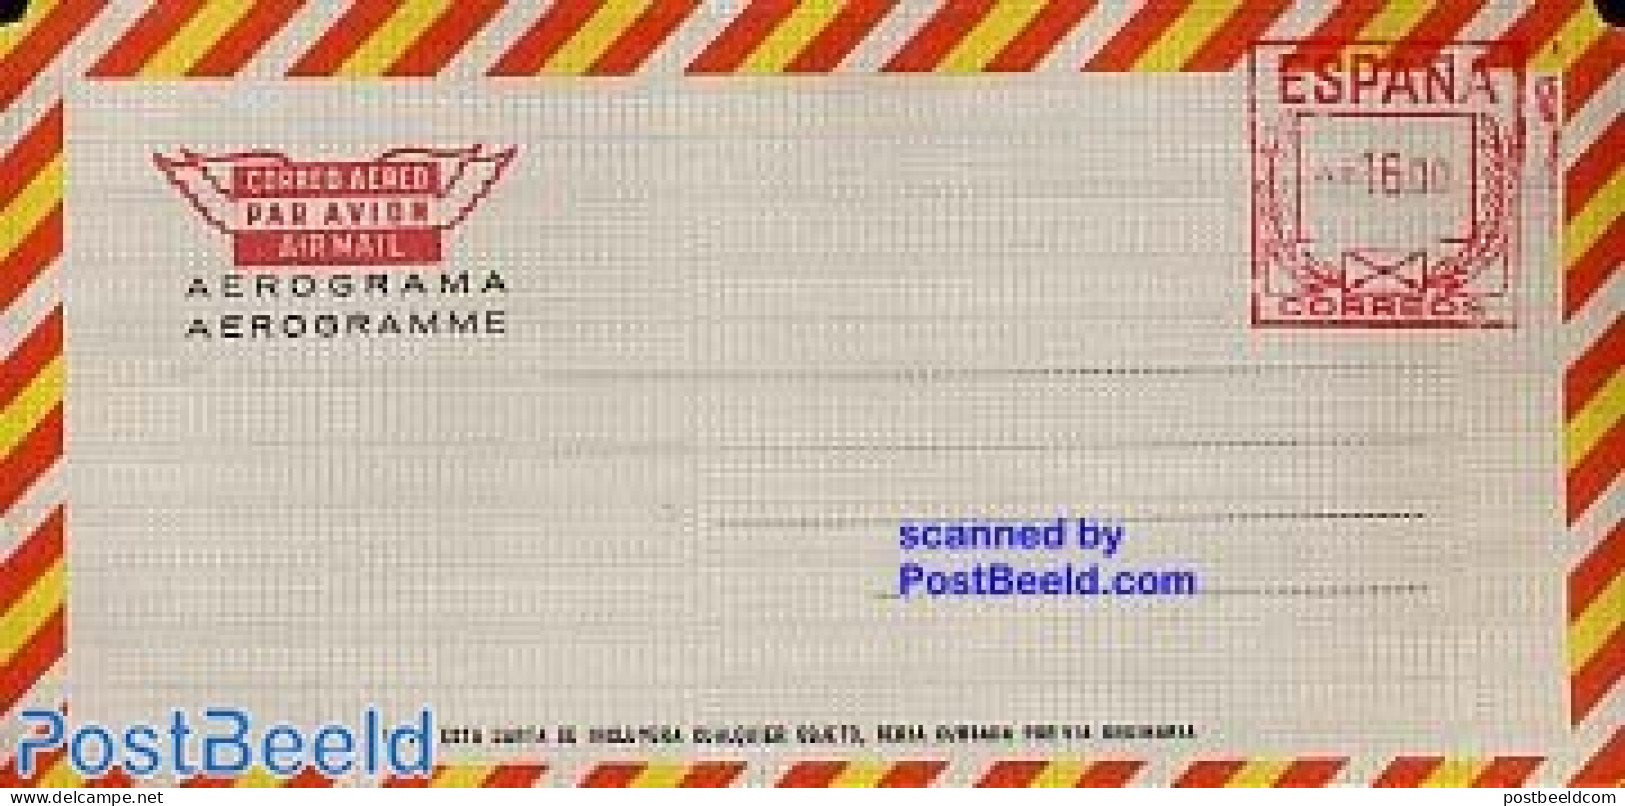 Spain 1979 AEROGRAM 16.00, Unused Postal Stationary - Lettres & Documents